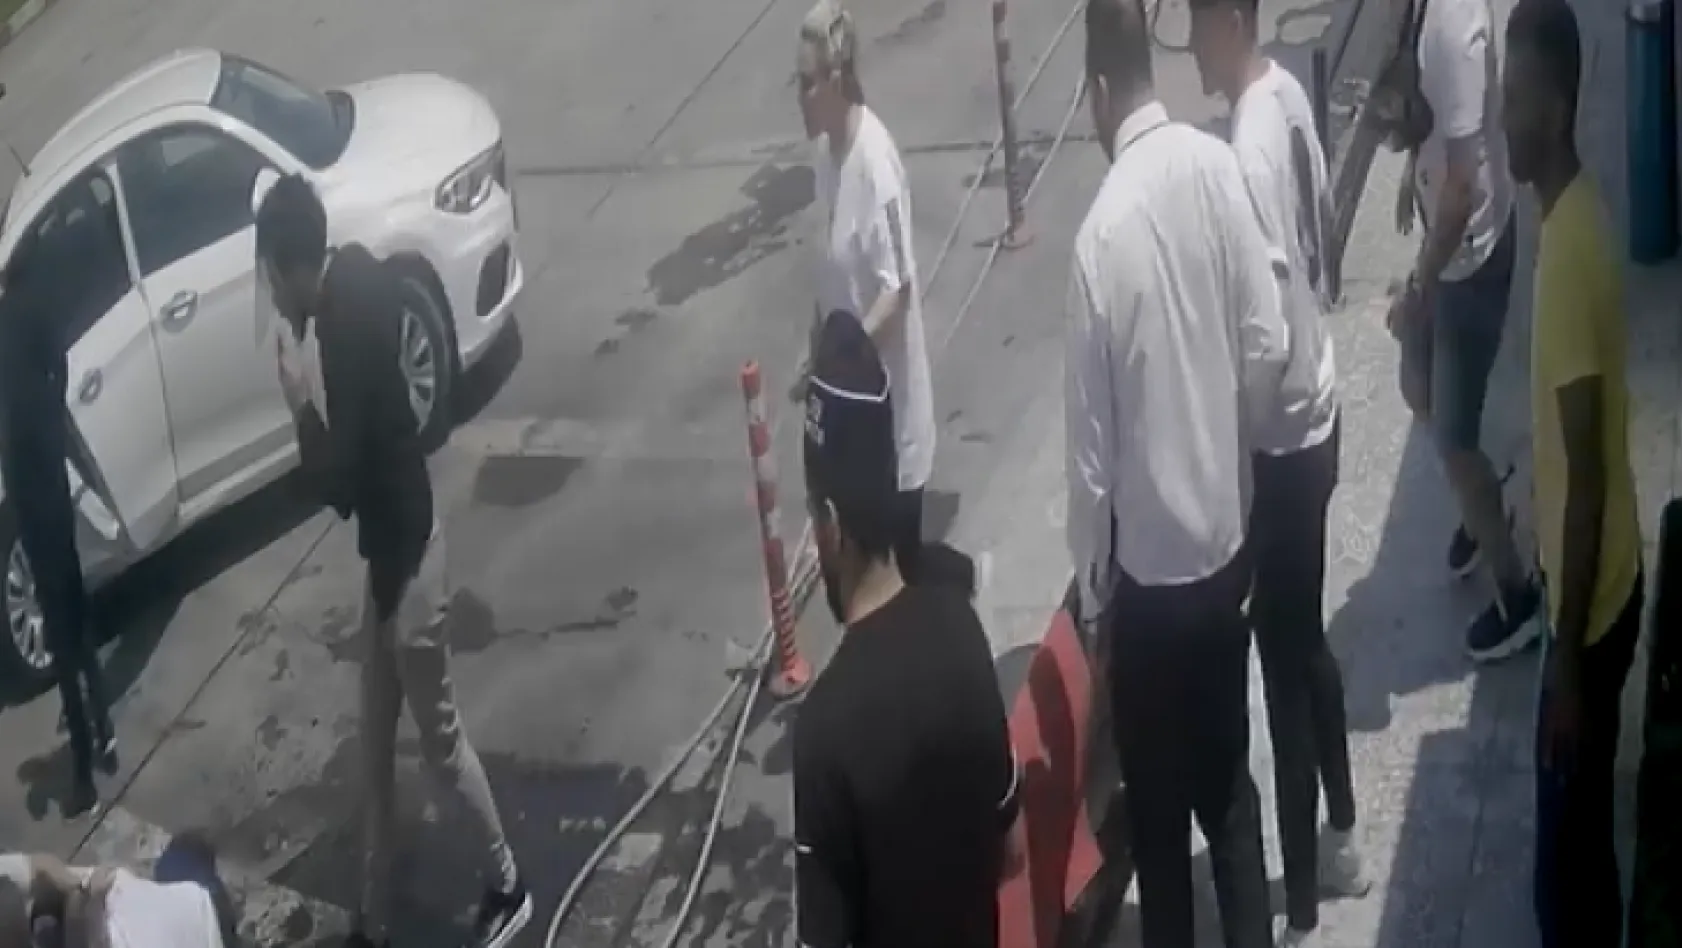 Edirne'de 2 Bulgar iş insanını kaçırma girişimi güvenlik kamerasında: Polis olarak tanıtıp kelepçelemeye çalıştılar